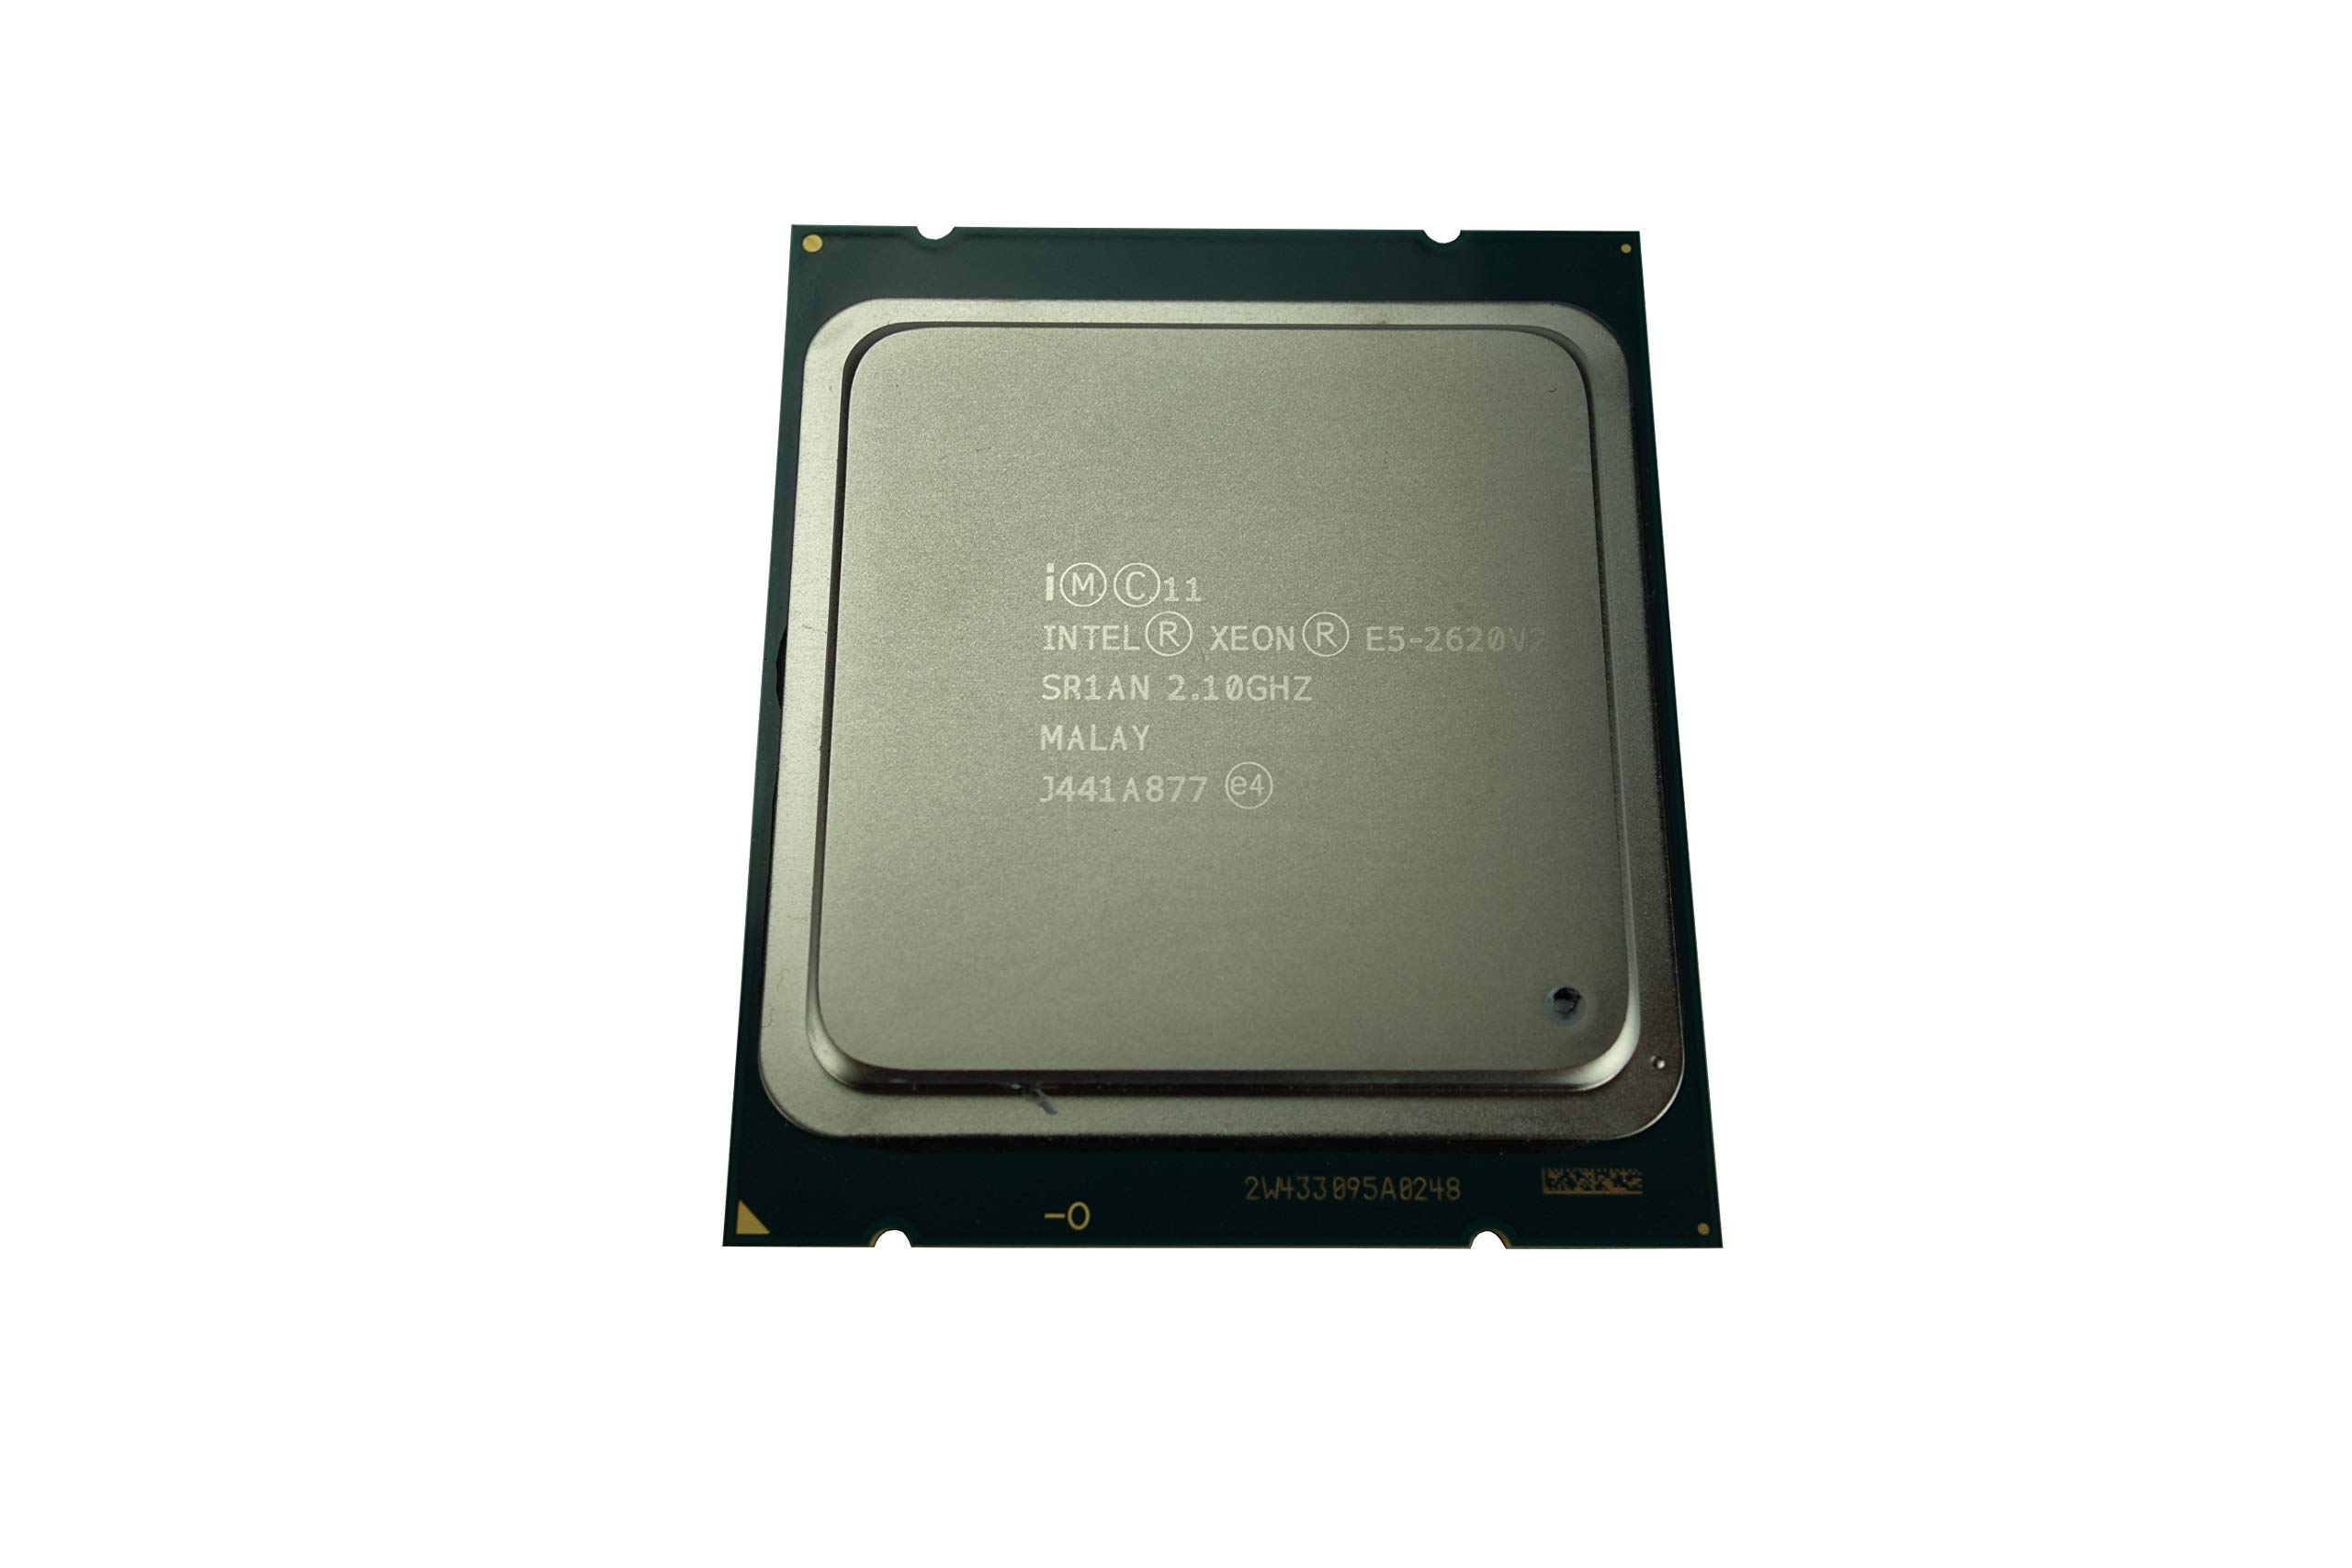 Intel Xeon E5-2620 v2 2.1GHz 15MB 6コア 7.2GTs 80W LGA2011 SR1AN CM8063501288301 認定整備済み